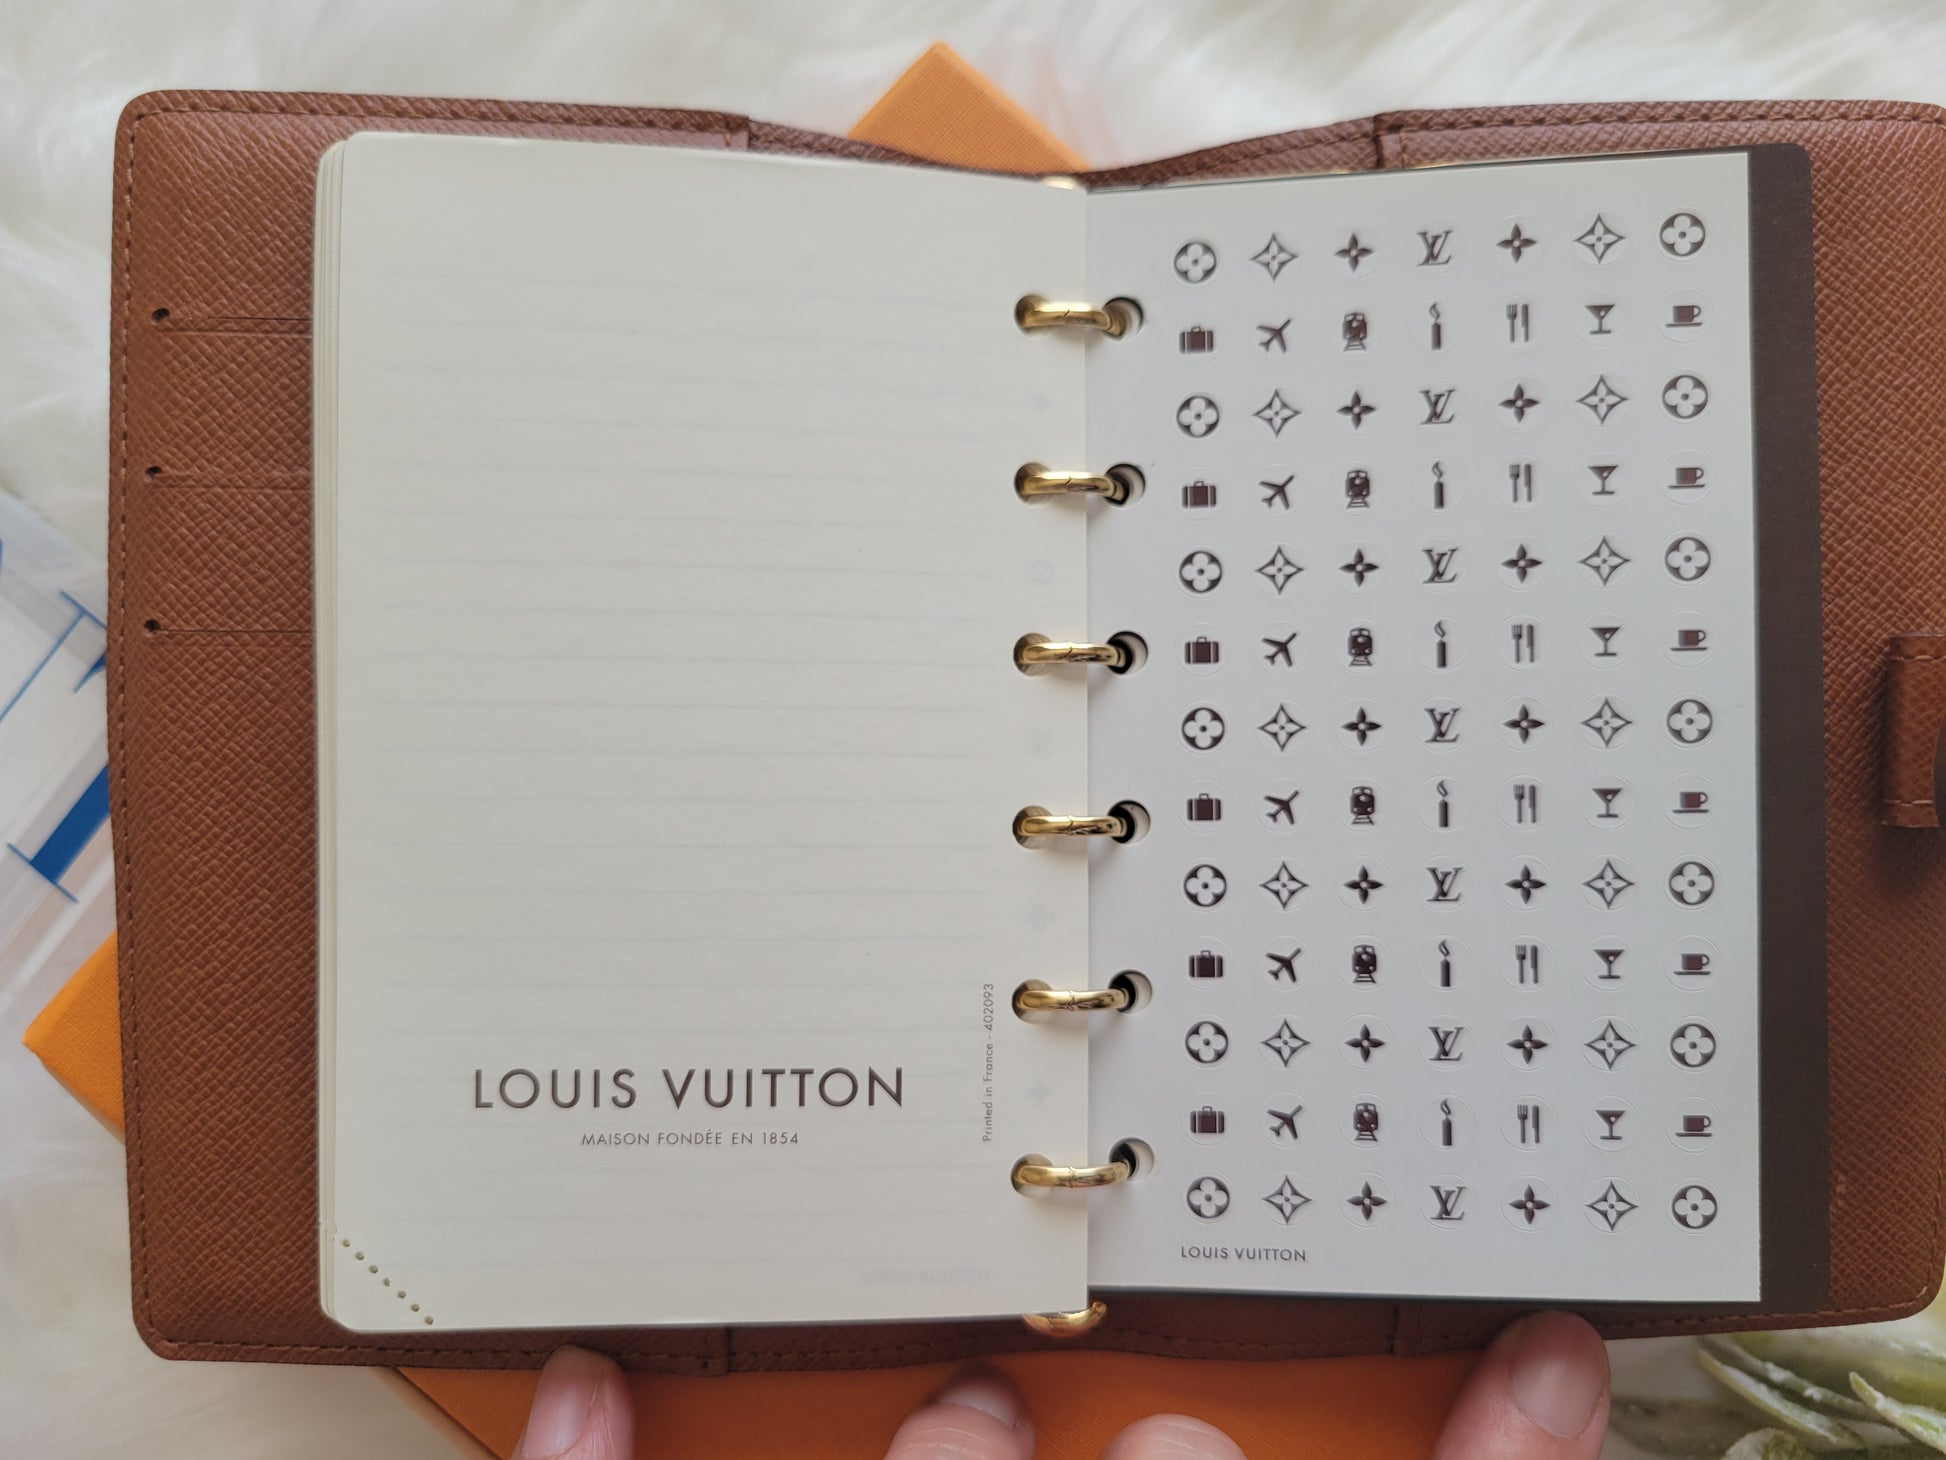 Louis Vuitton Agenda Refill 